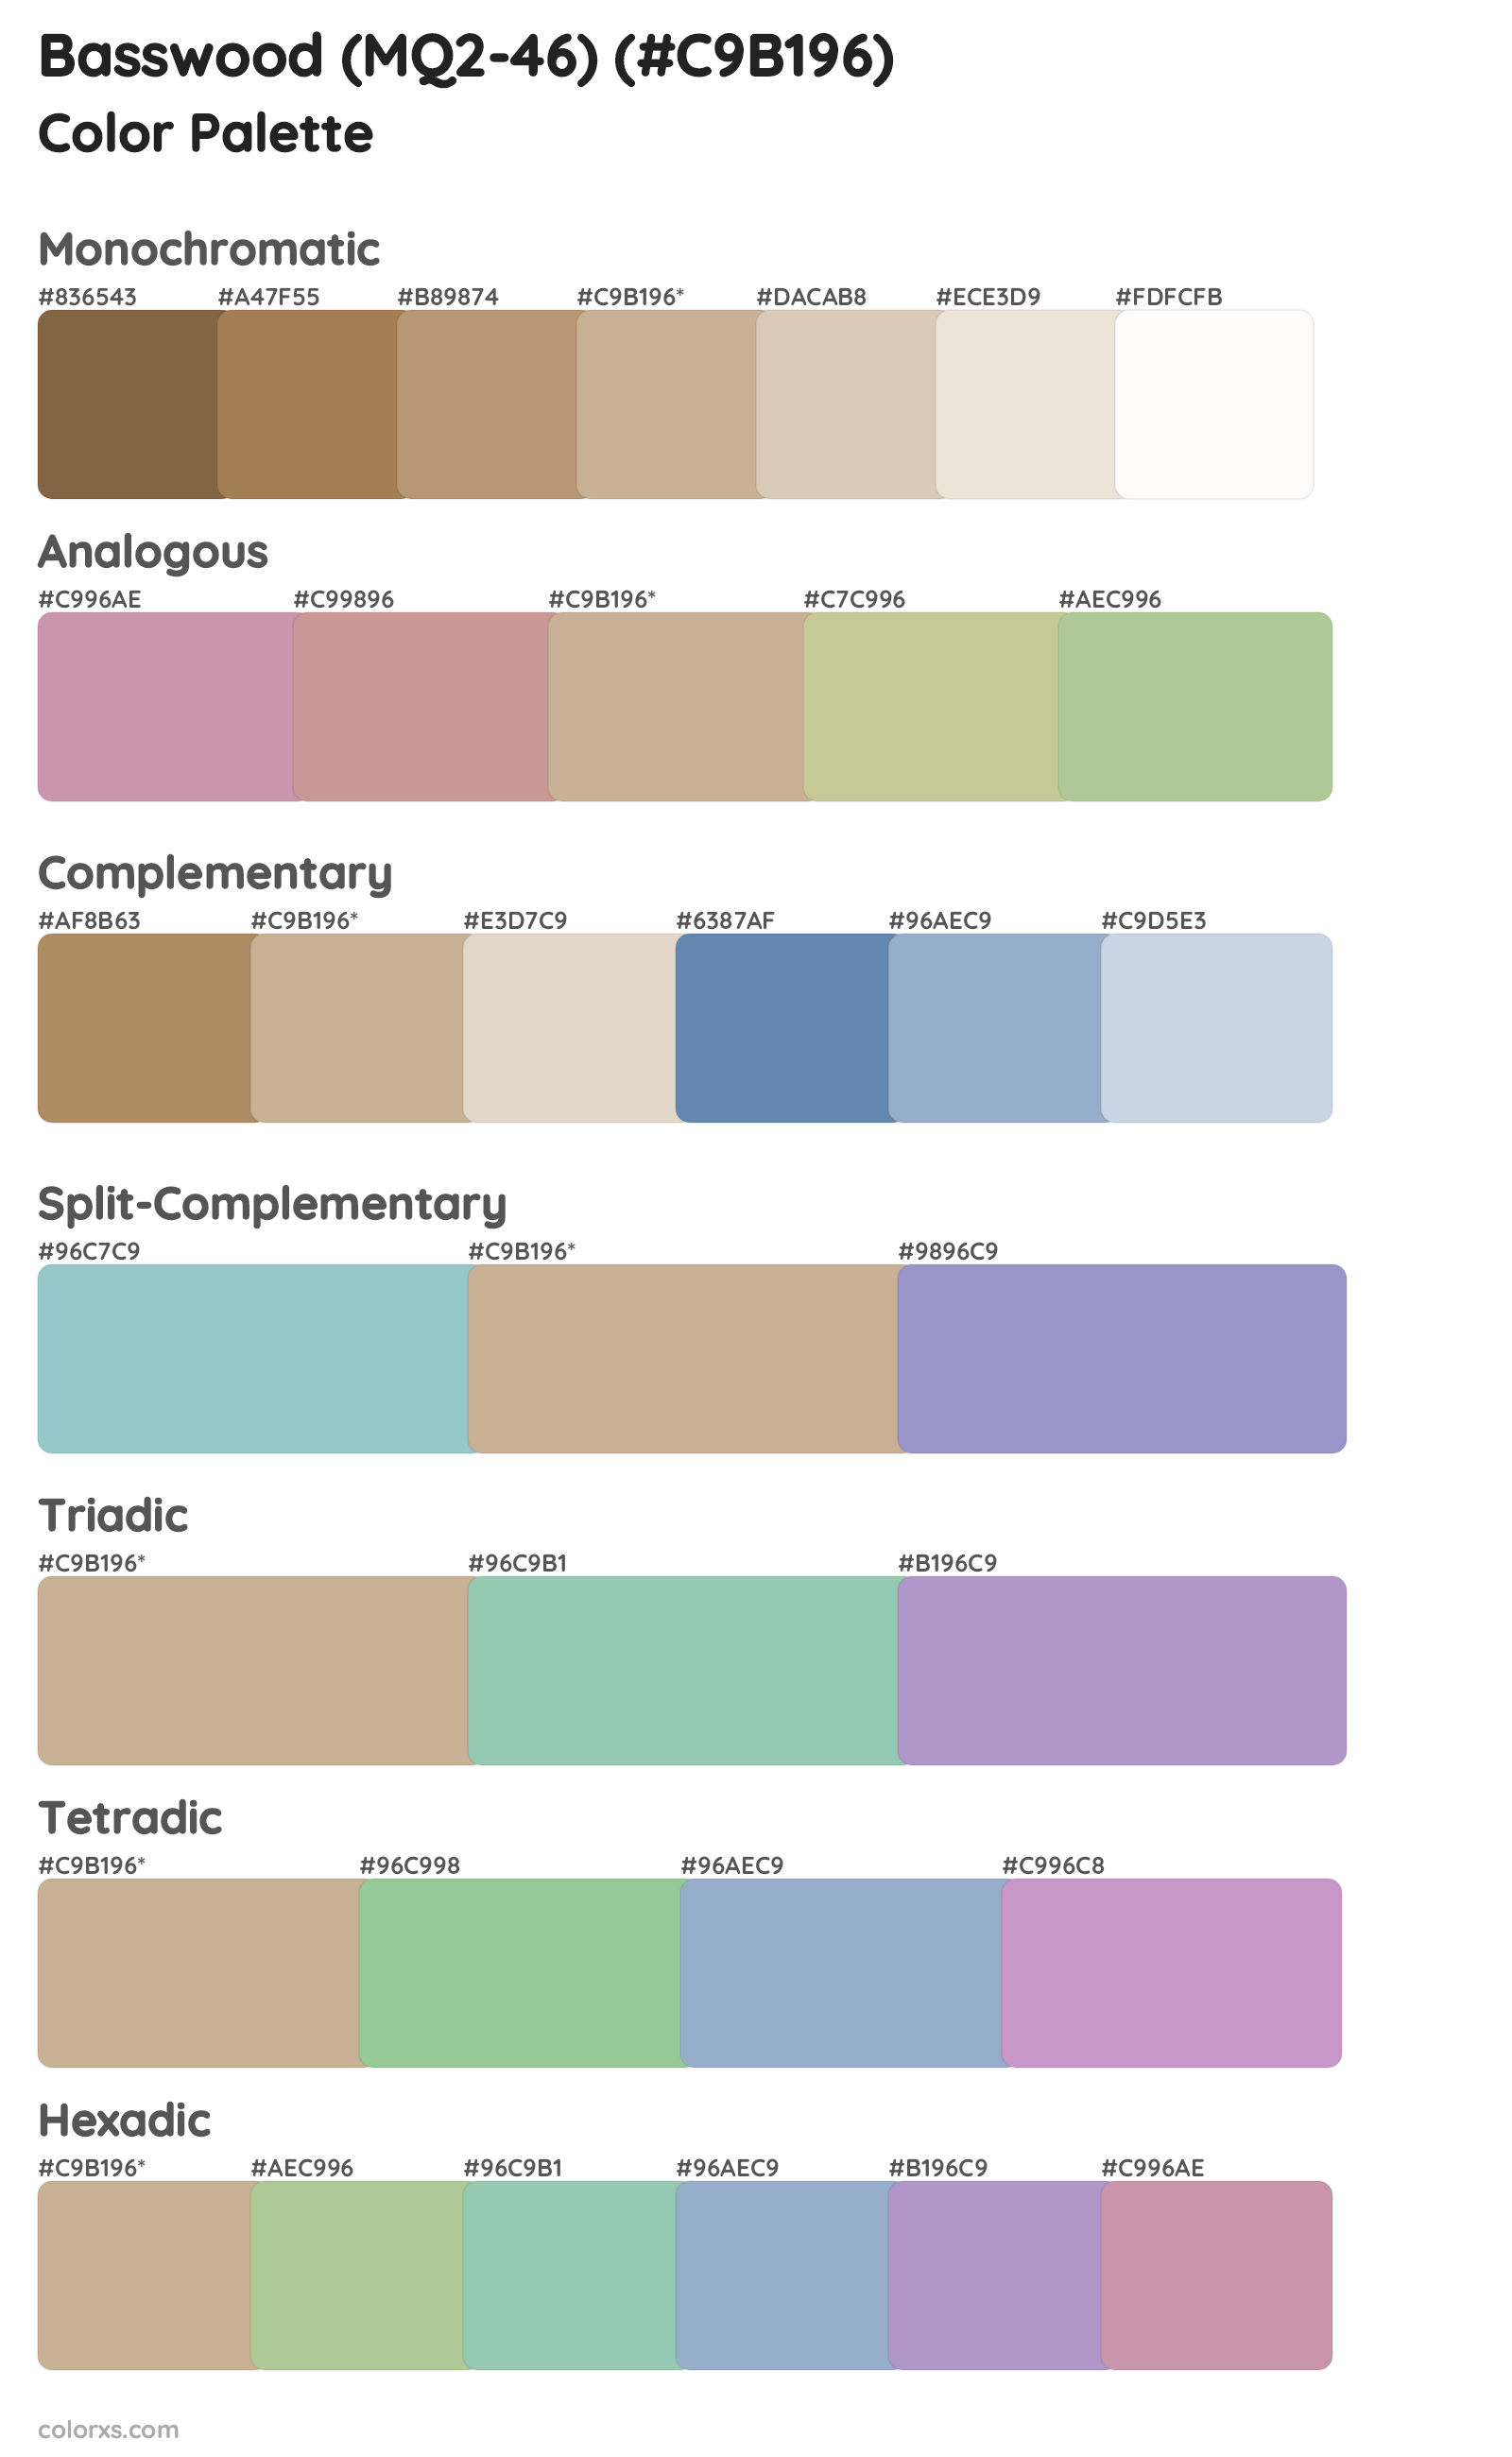 Basswood (MQ2-46) Color Scheme Palettes